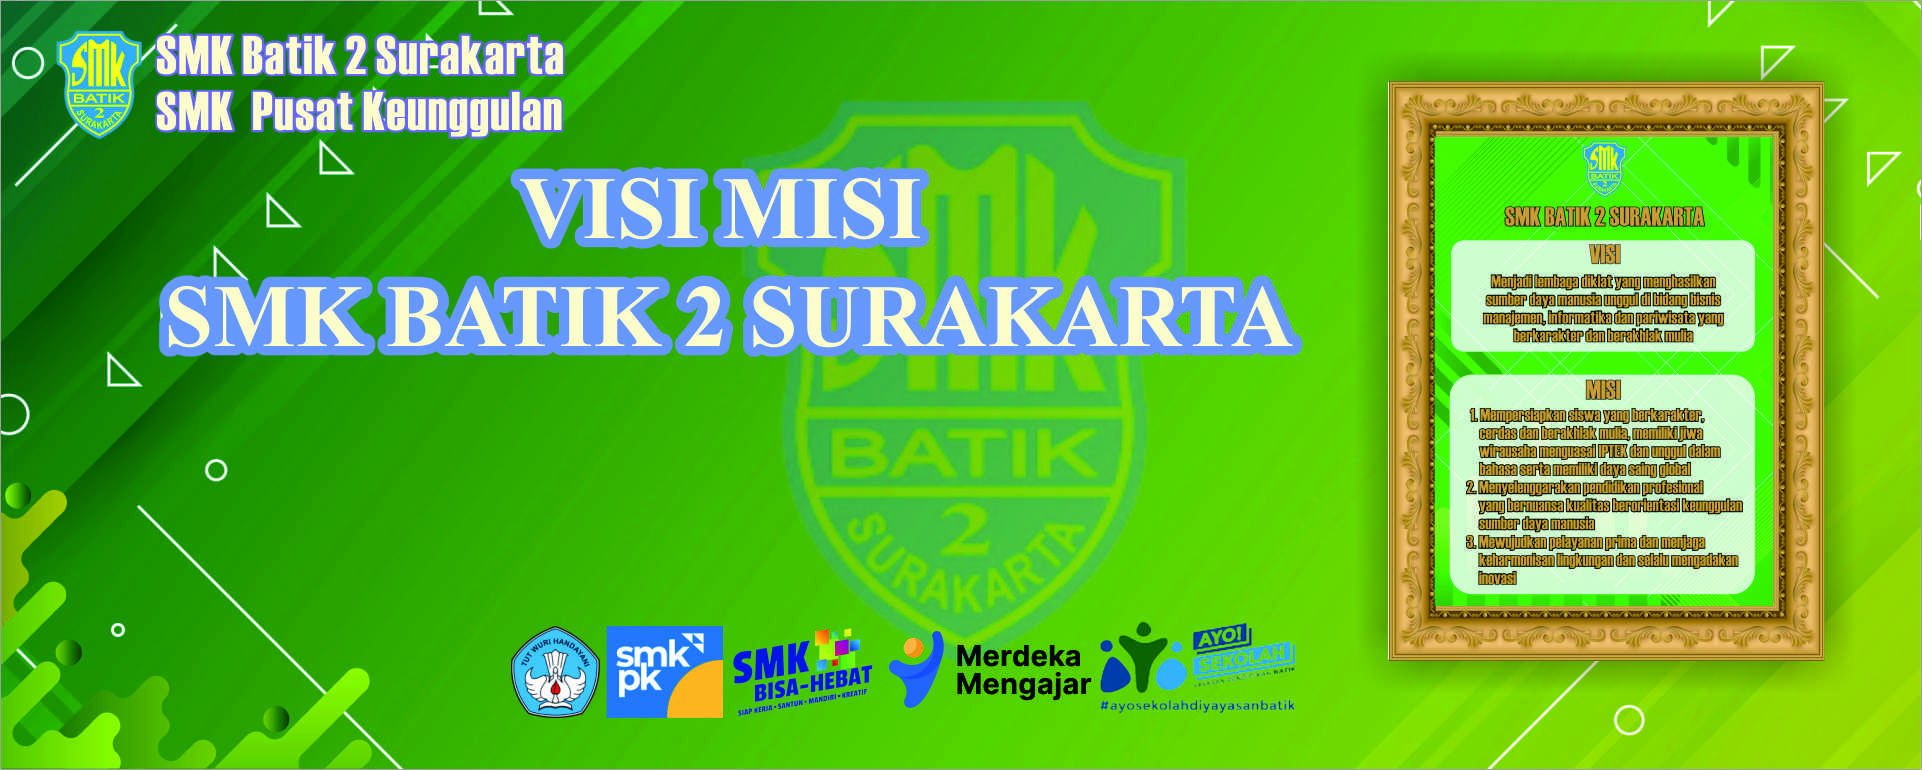 Visi Misi SMK Batik 2 Surakarta